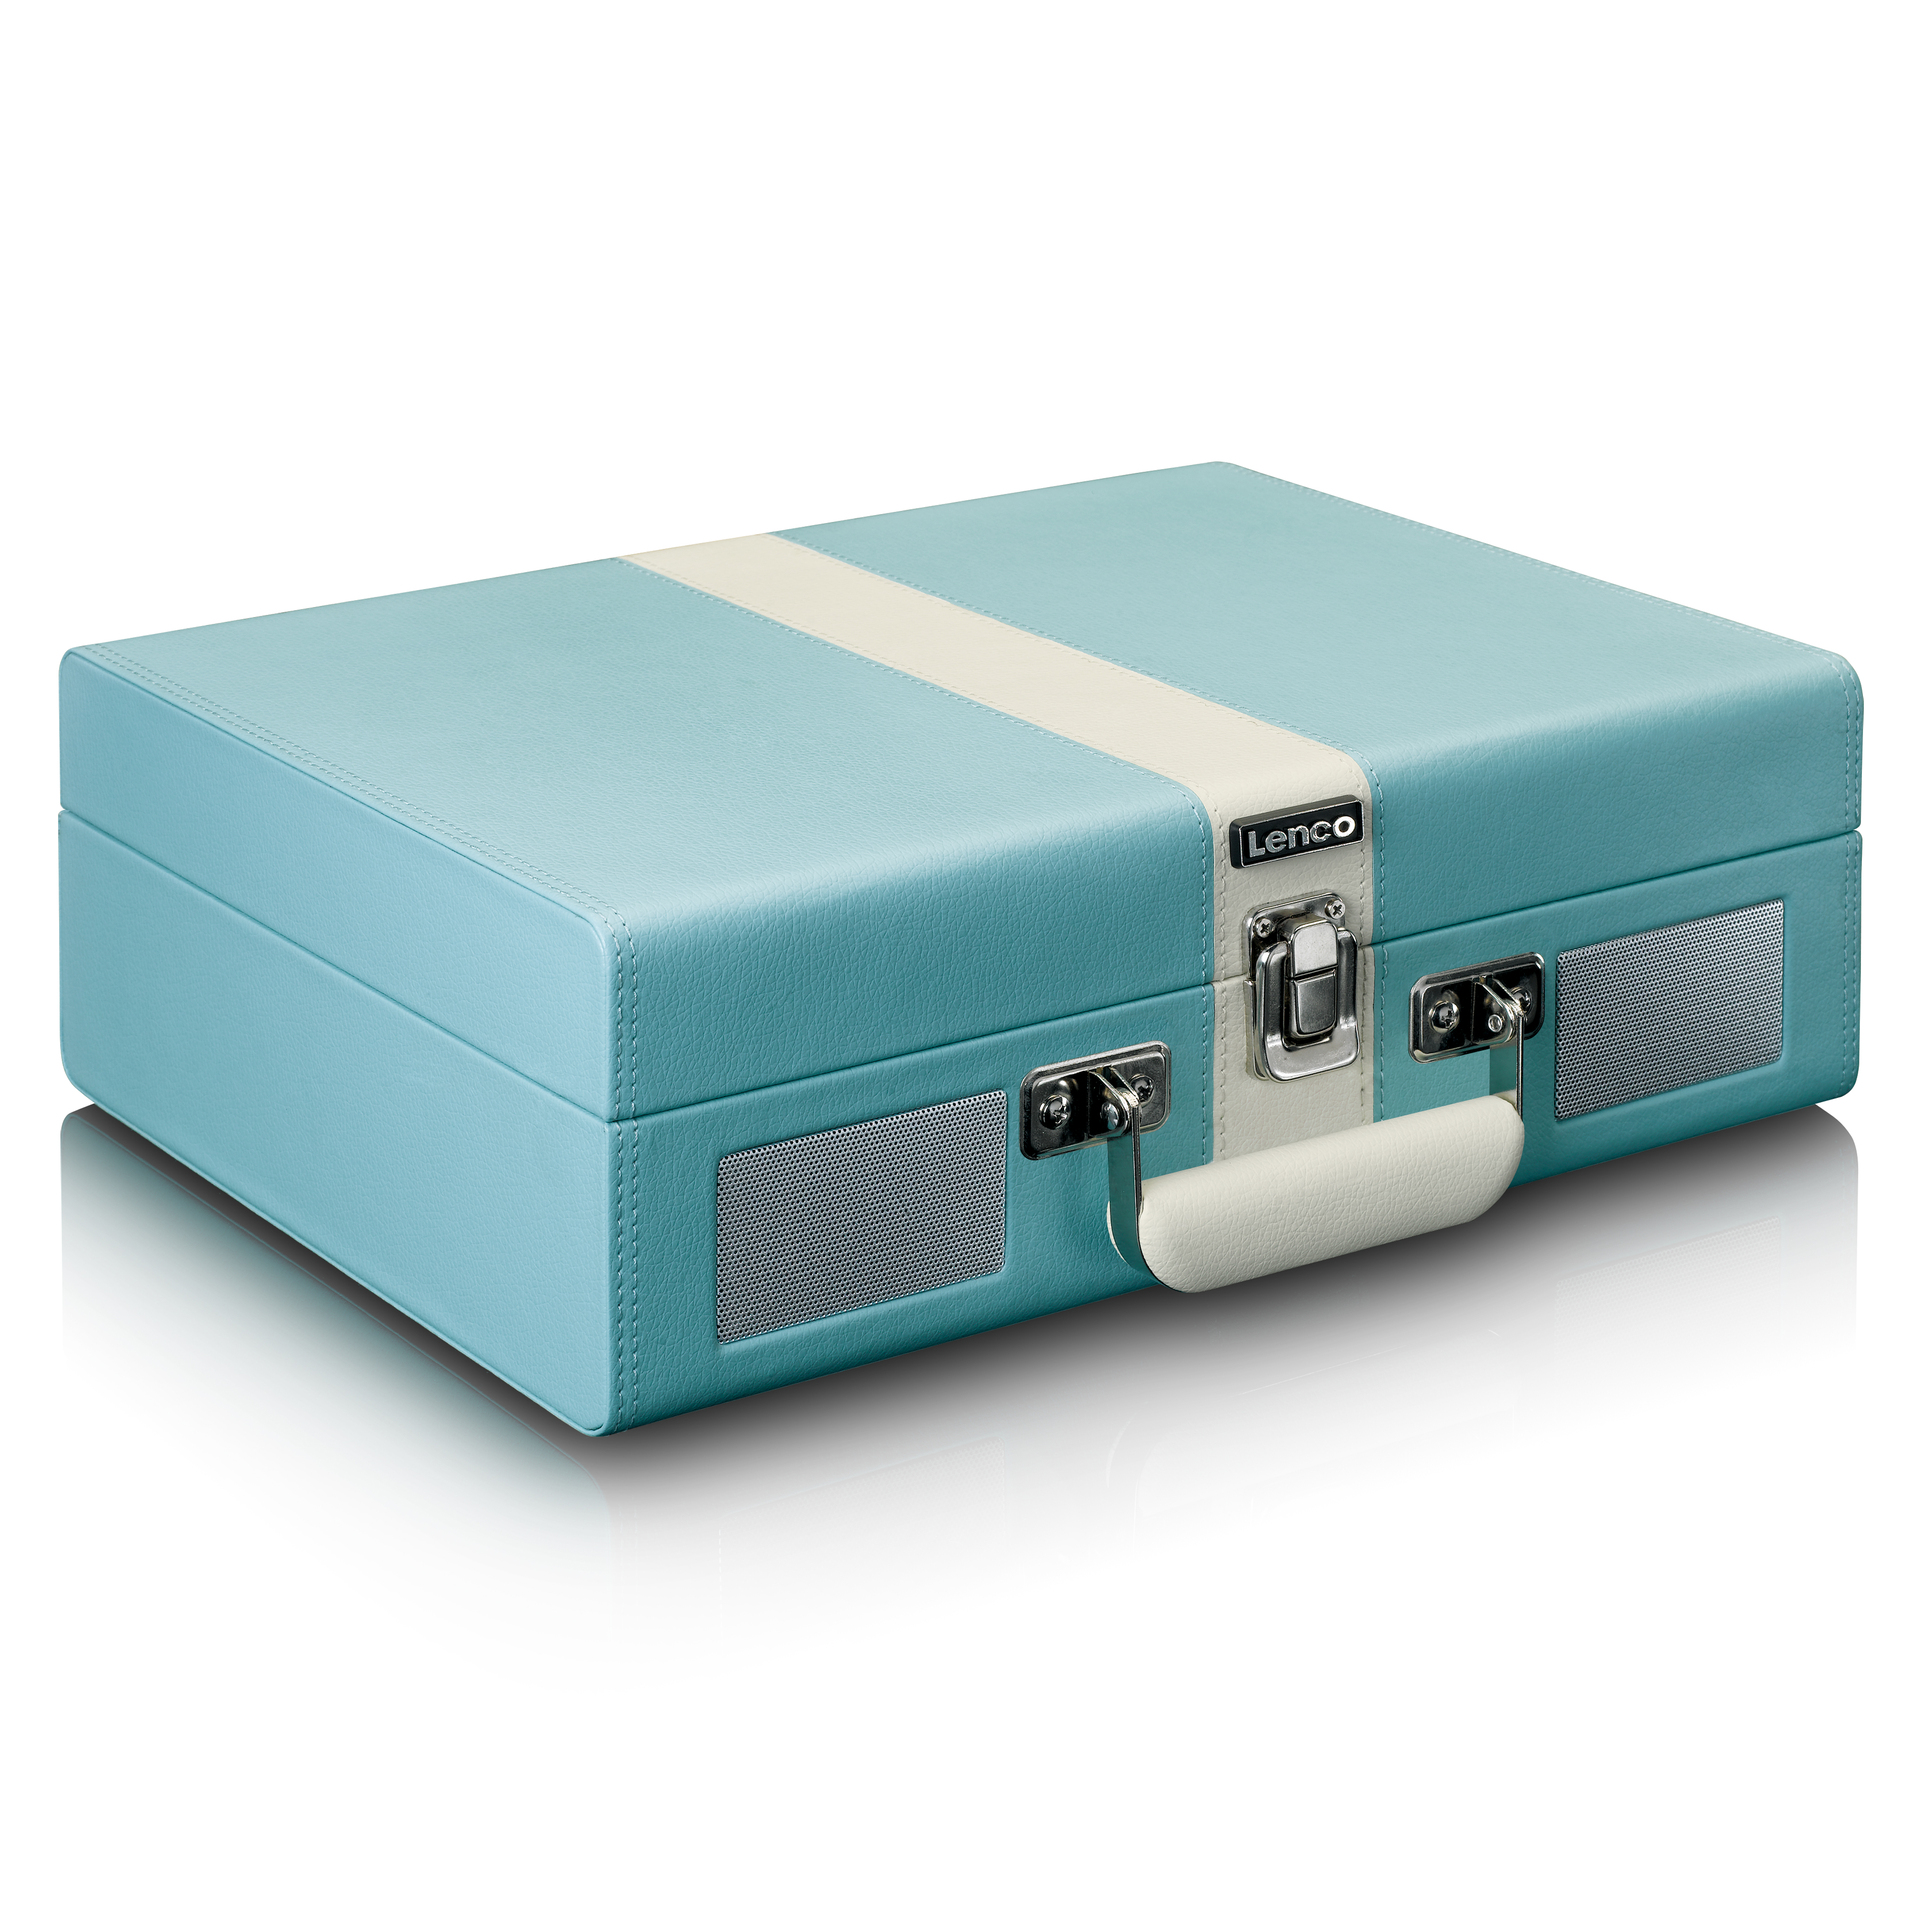 LENCO Koffer-Plattenspieler mit BT und Lsp. | aetka Shop eingebauten